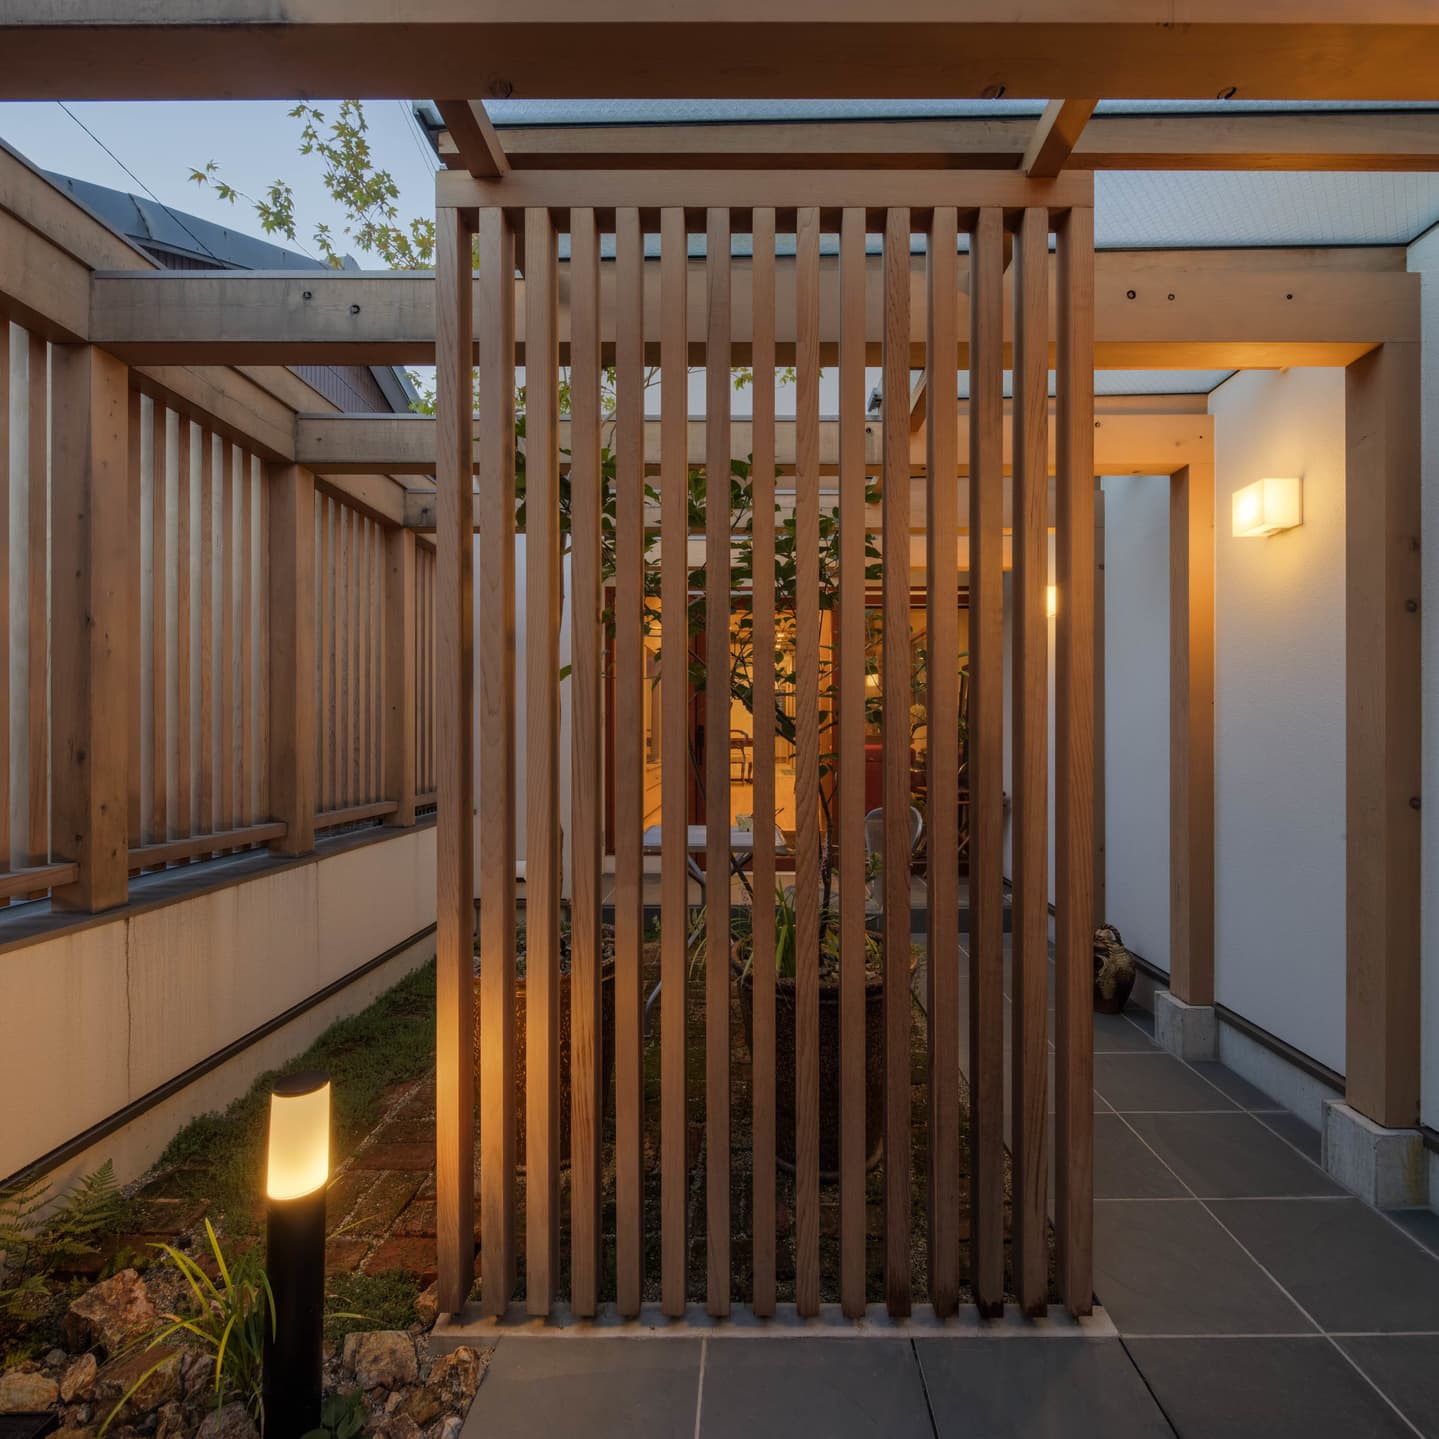 大阪の建築家・中平勝が設計した庭からアプローチするリノベーション住宅です